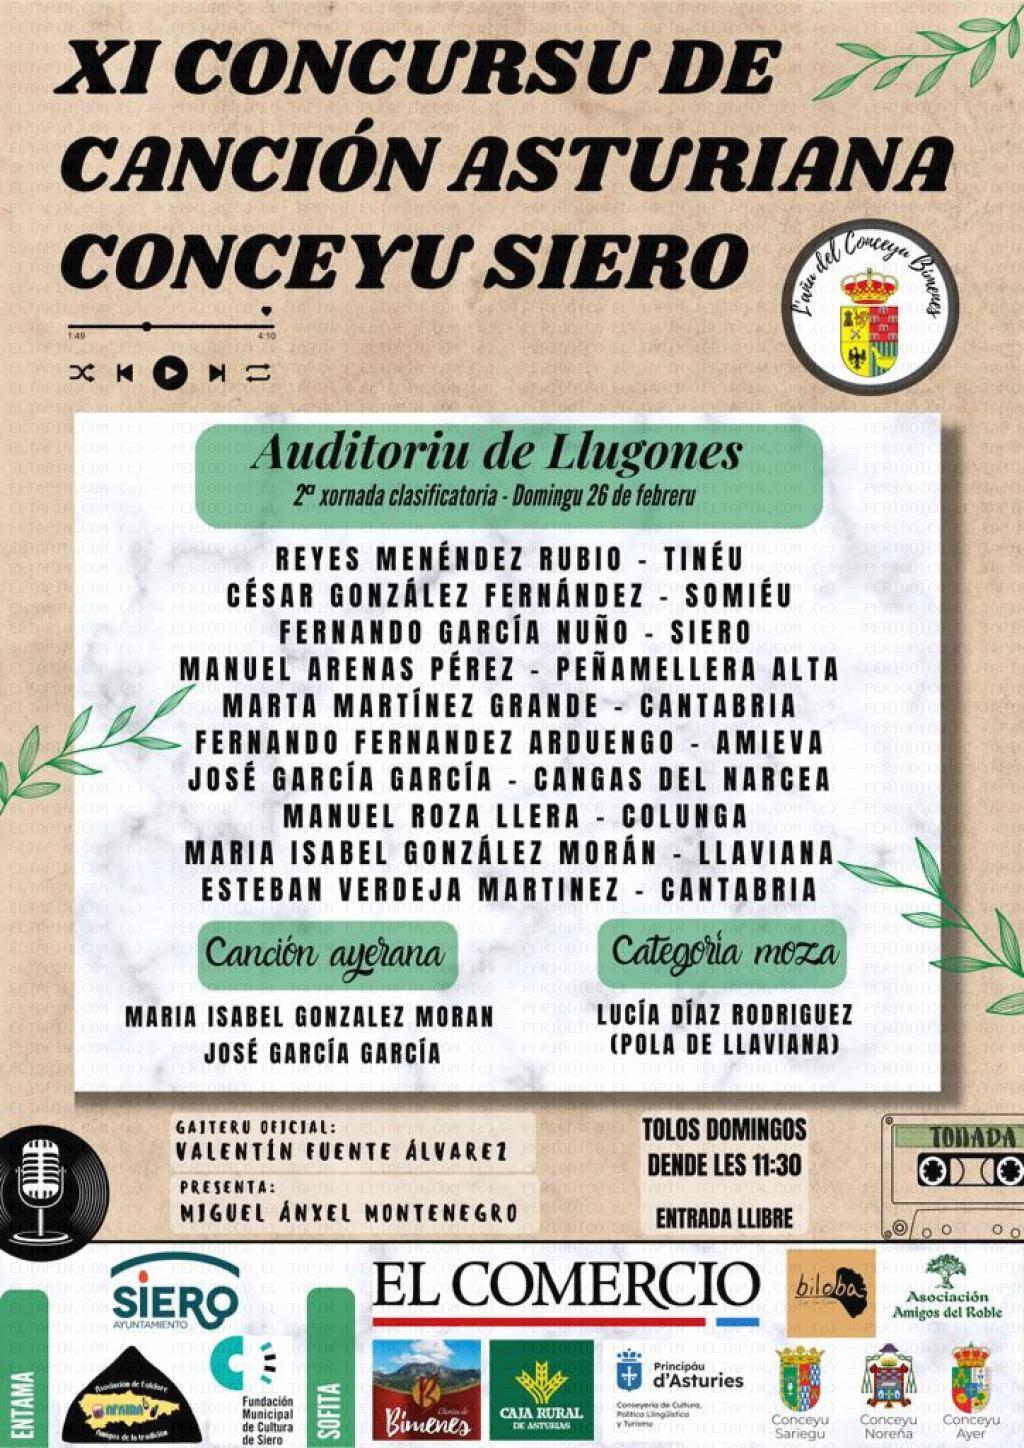 El Tapin - La segunda jornada clasificatoria del XI Concursu de Canción Asturiana Conceyu Siero se celebra el 26 de febrero en el Centro Polivalente de Lugones